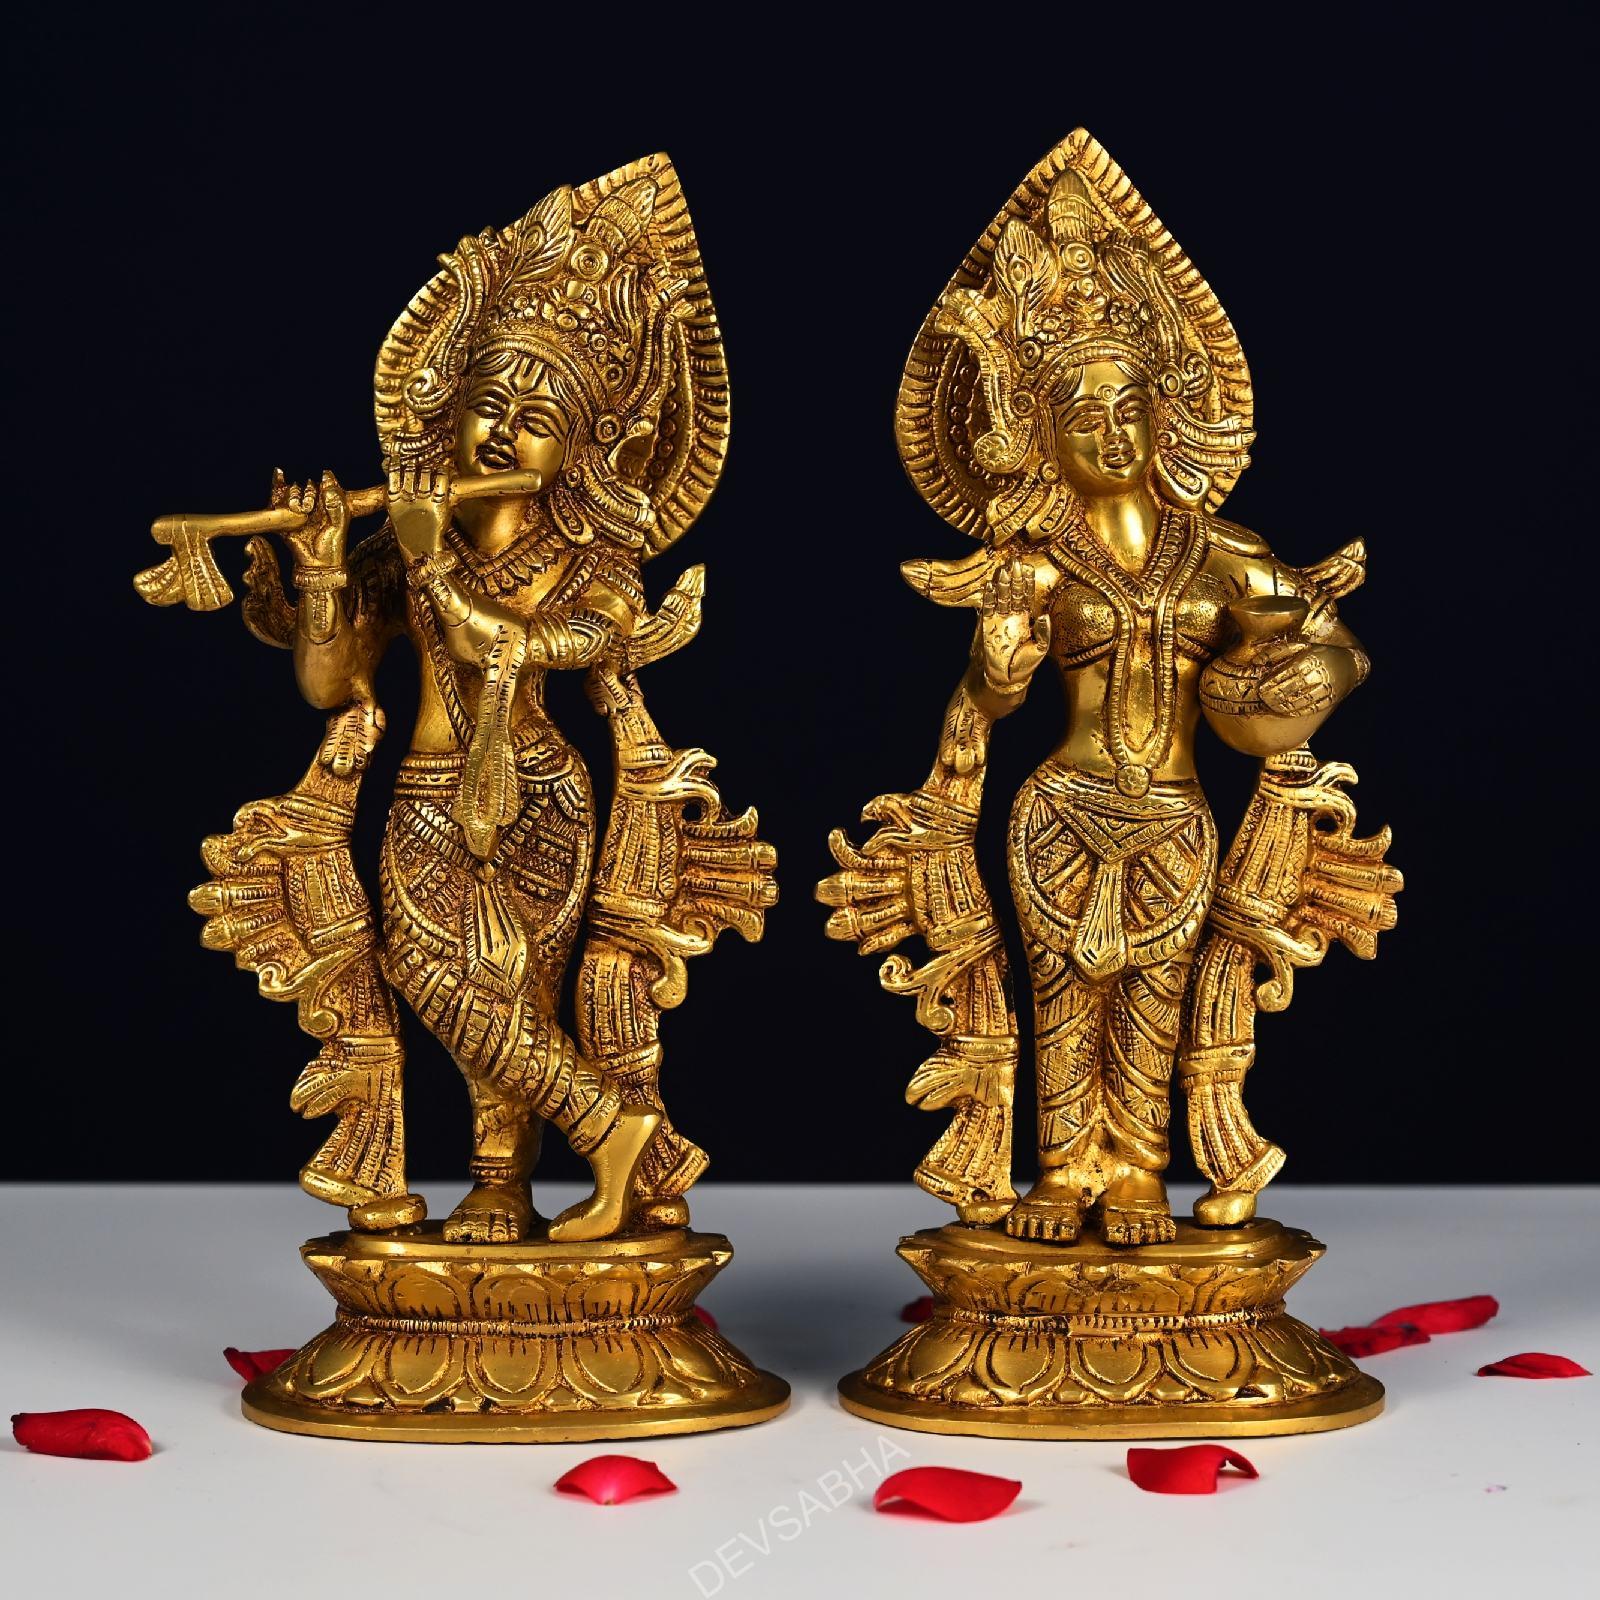 brass radha krishna idol statue height 12.5 inch